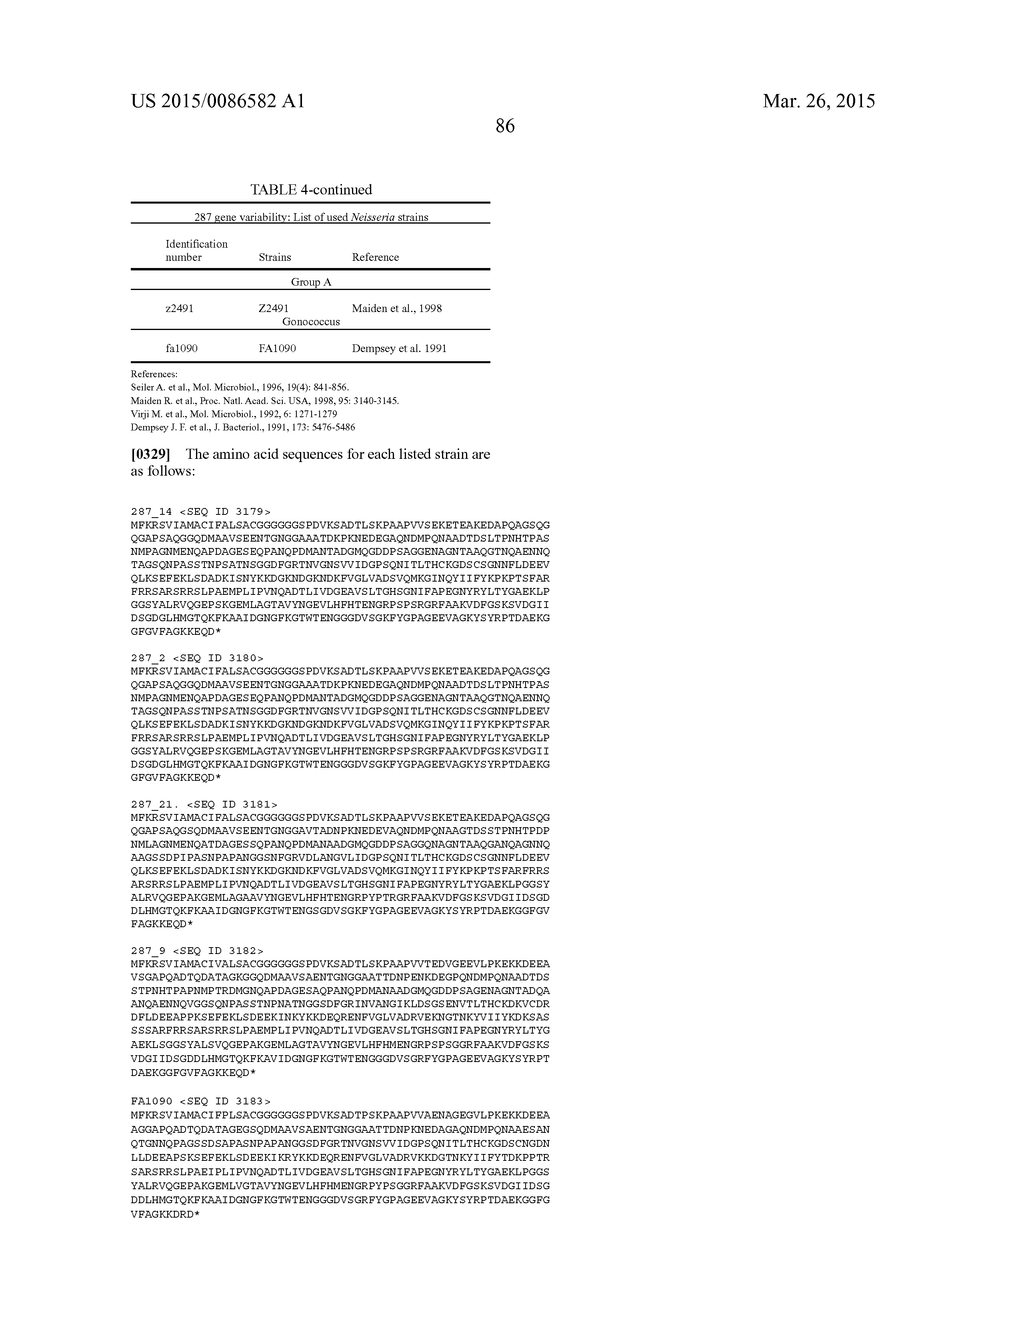 NEISSERIA MENINGITIDIS ANTIGENS AND COMPOSITIONS - diagram, schematic, and image 118